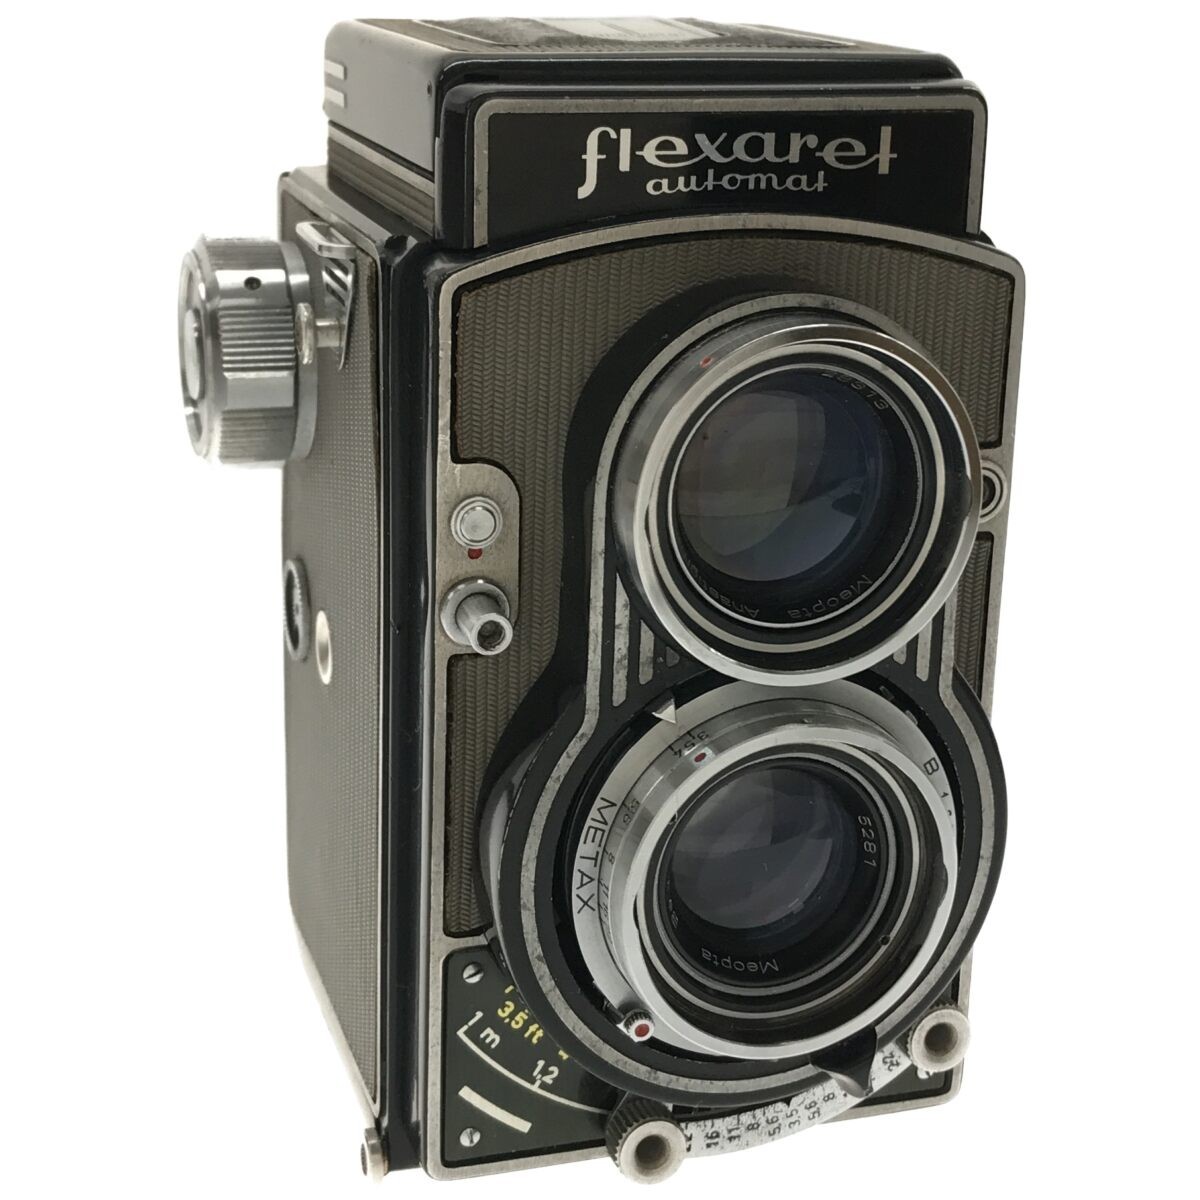 【超希少 完動品】チェコスロバキア製 二眼レフ フレクサレット 6型 flexaret VI Meoptat F3 80mm / Belar F3.5 80mm フィルムカメラ C2849_画像2